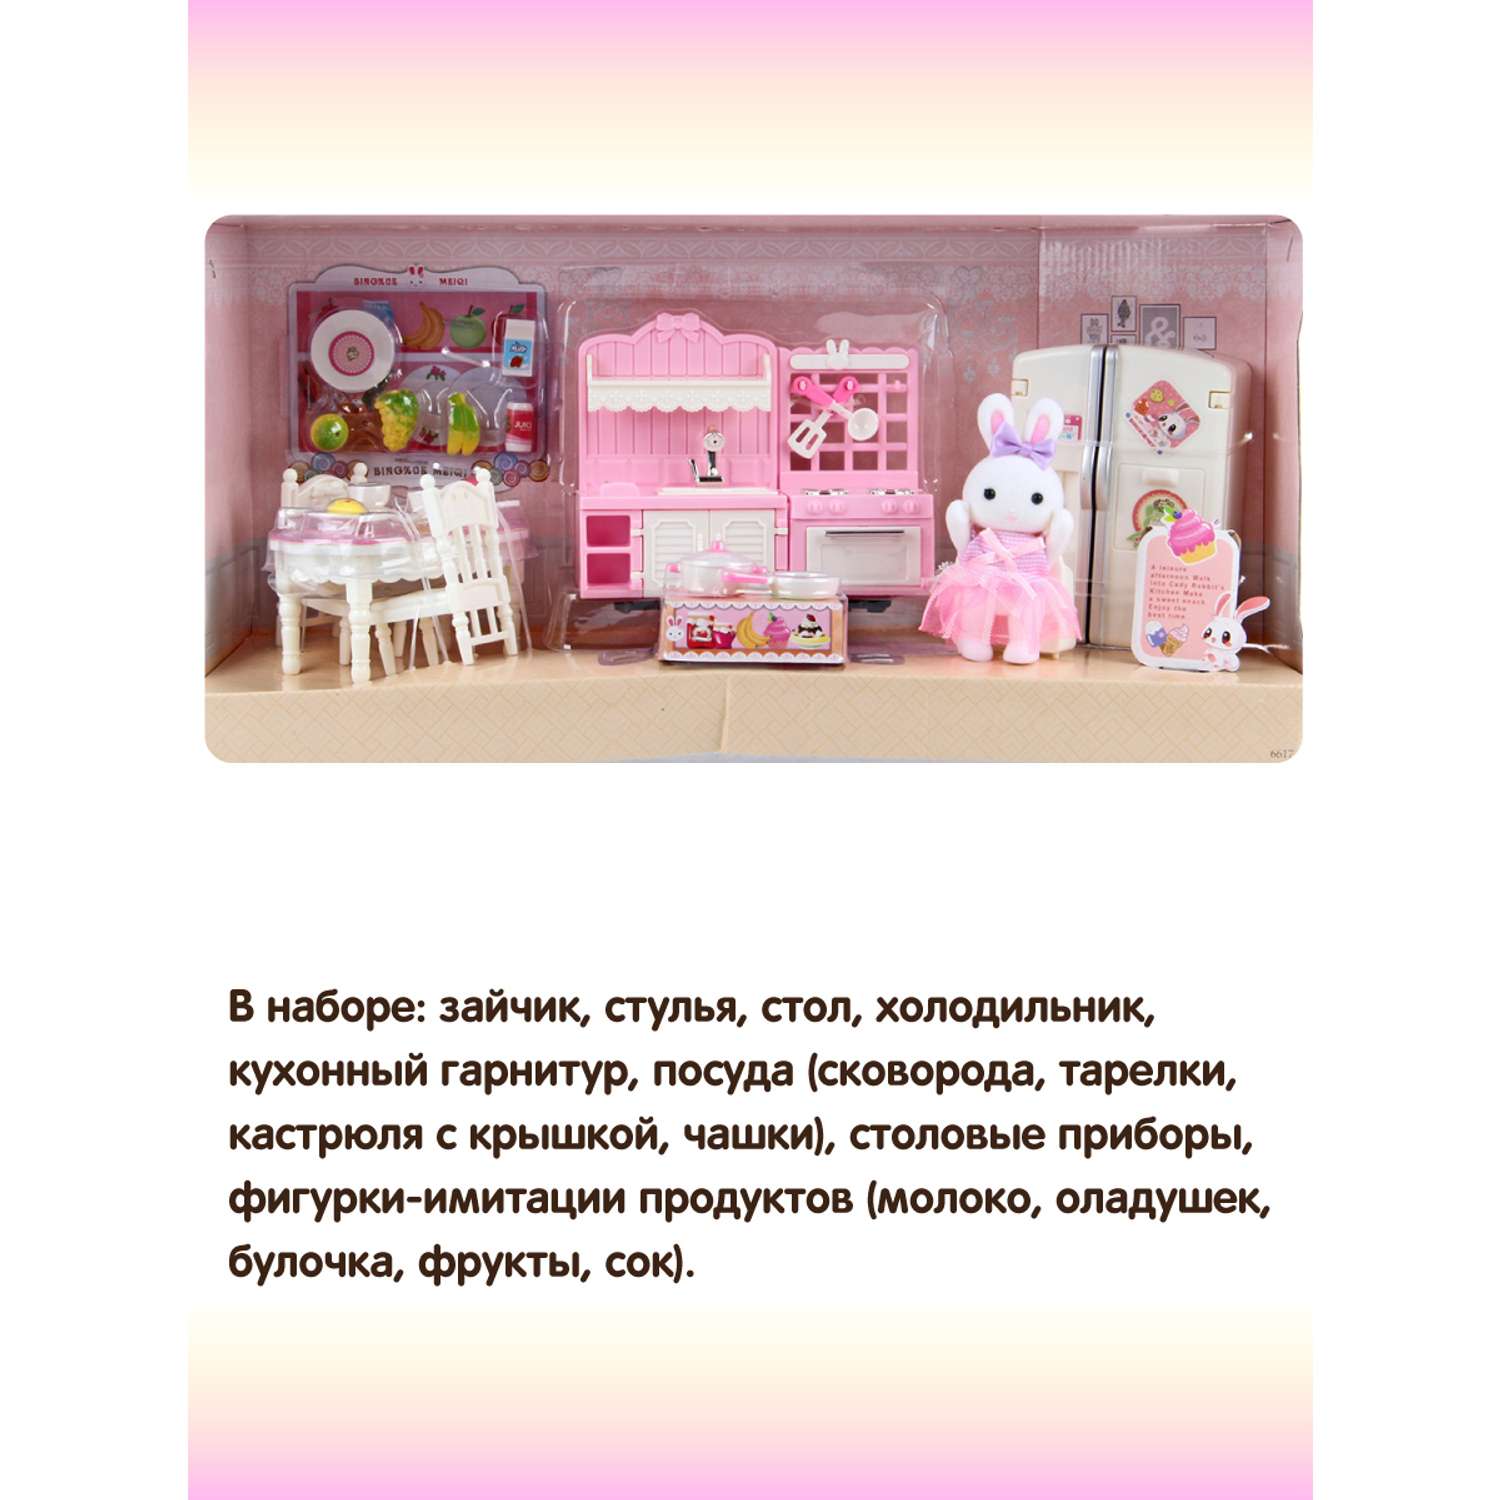 Детская кухня Veld Co Мебель для кукол Зайка посуда игрушечные продукты 113305 - фото 3